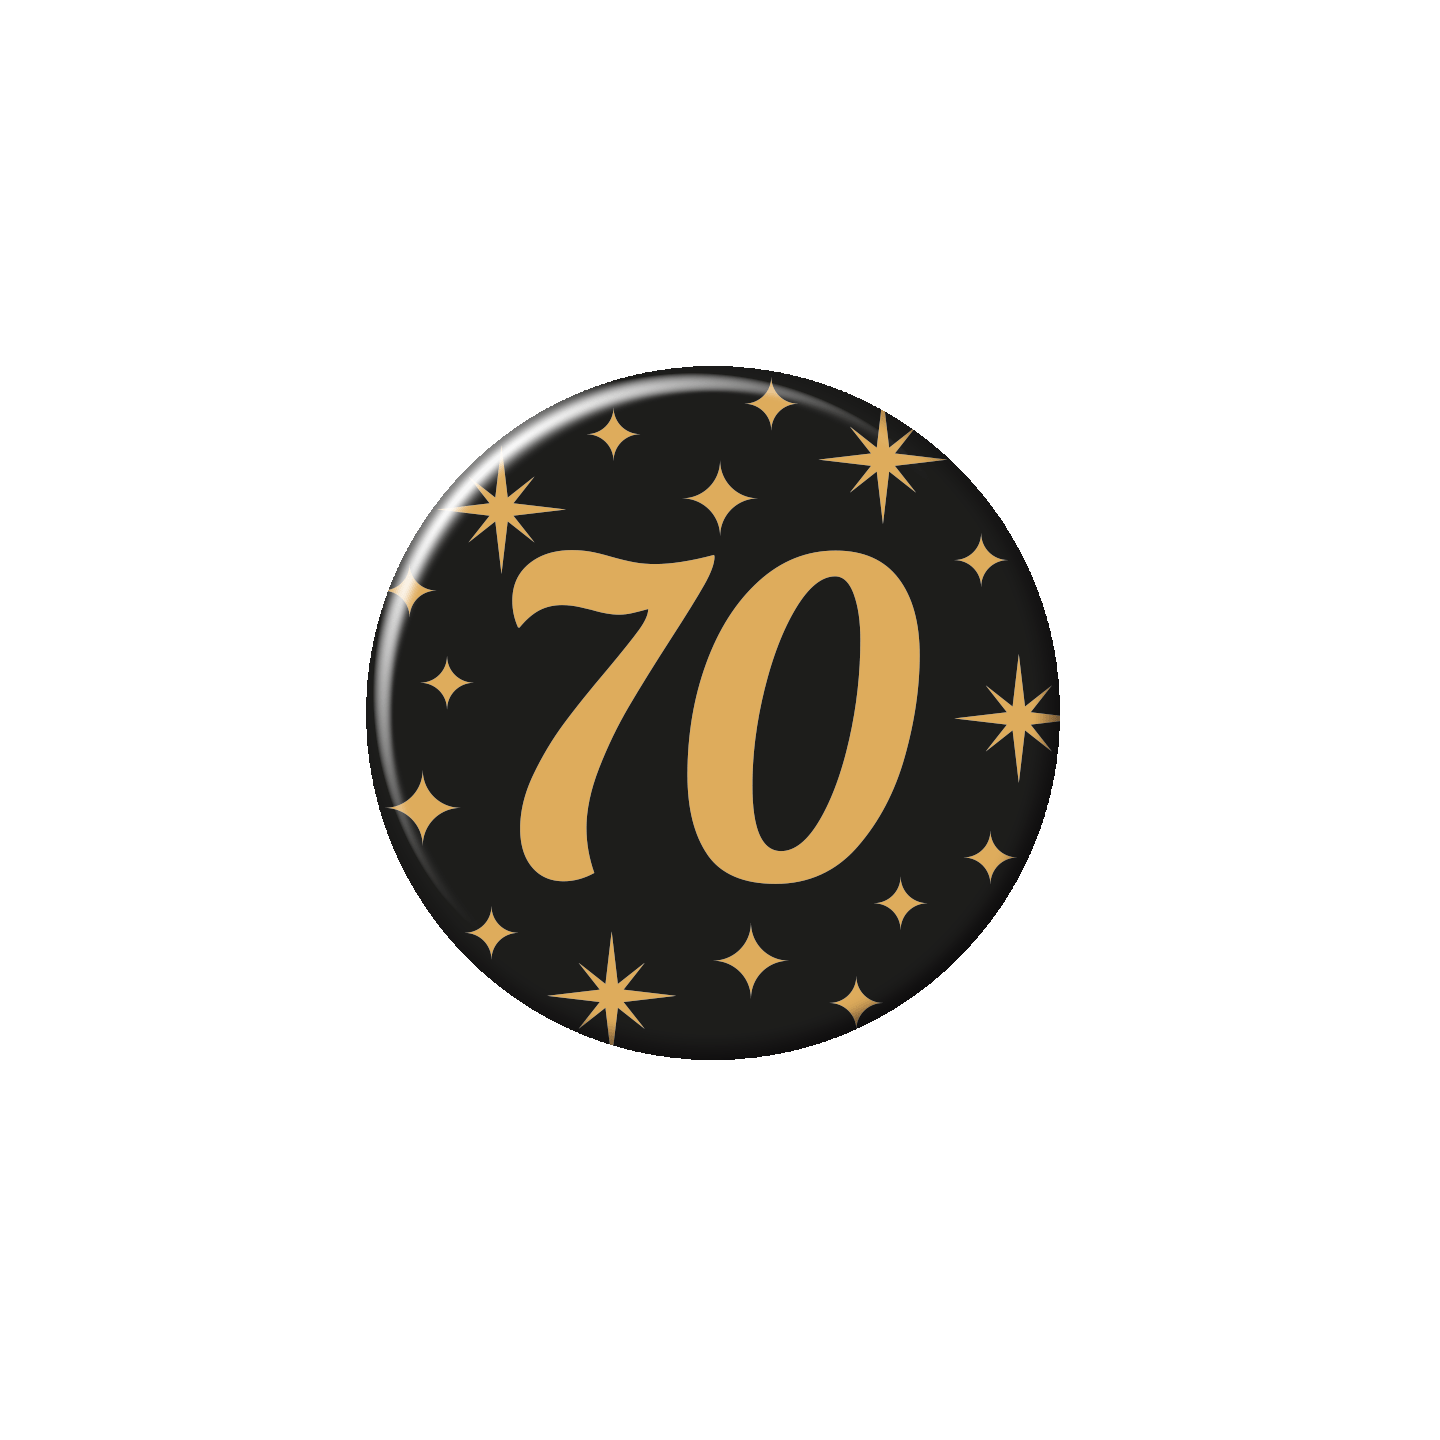 leeftijd button verjaardag 70 jaar badge